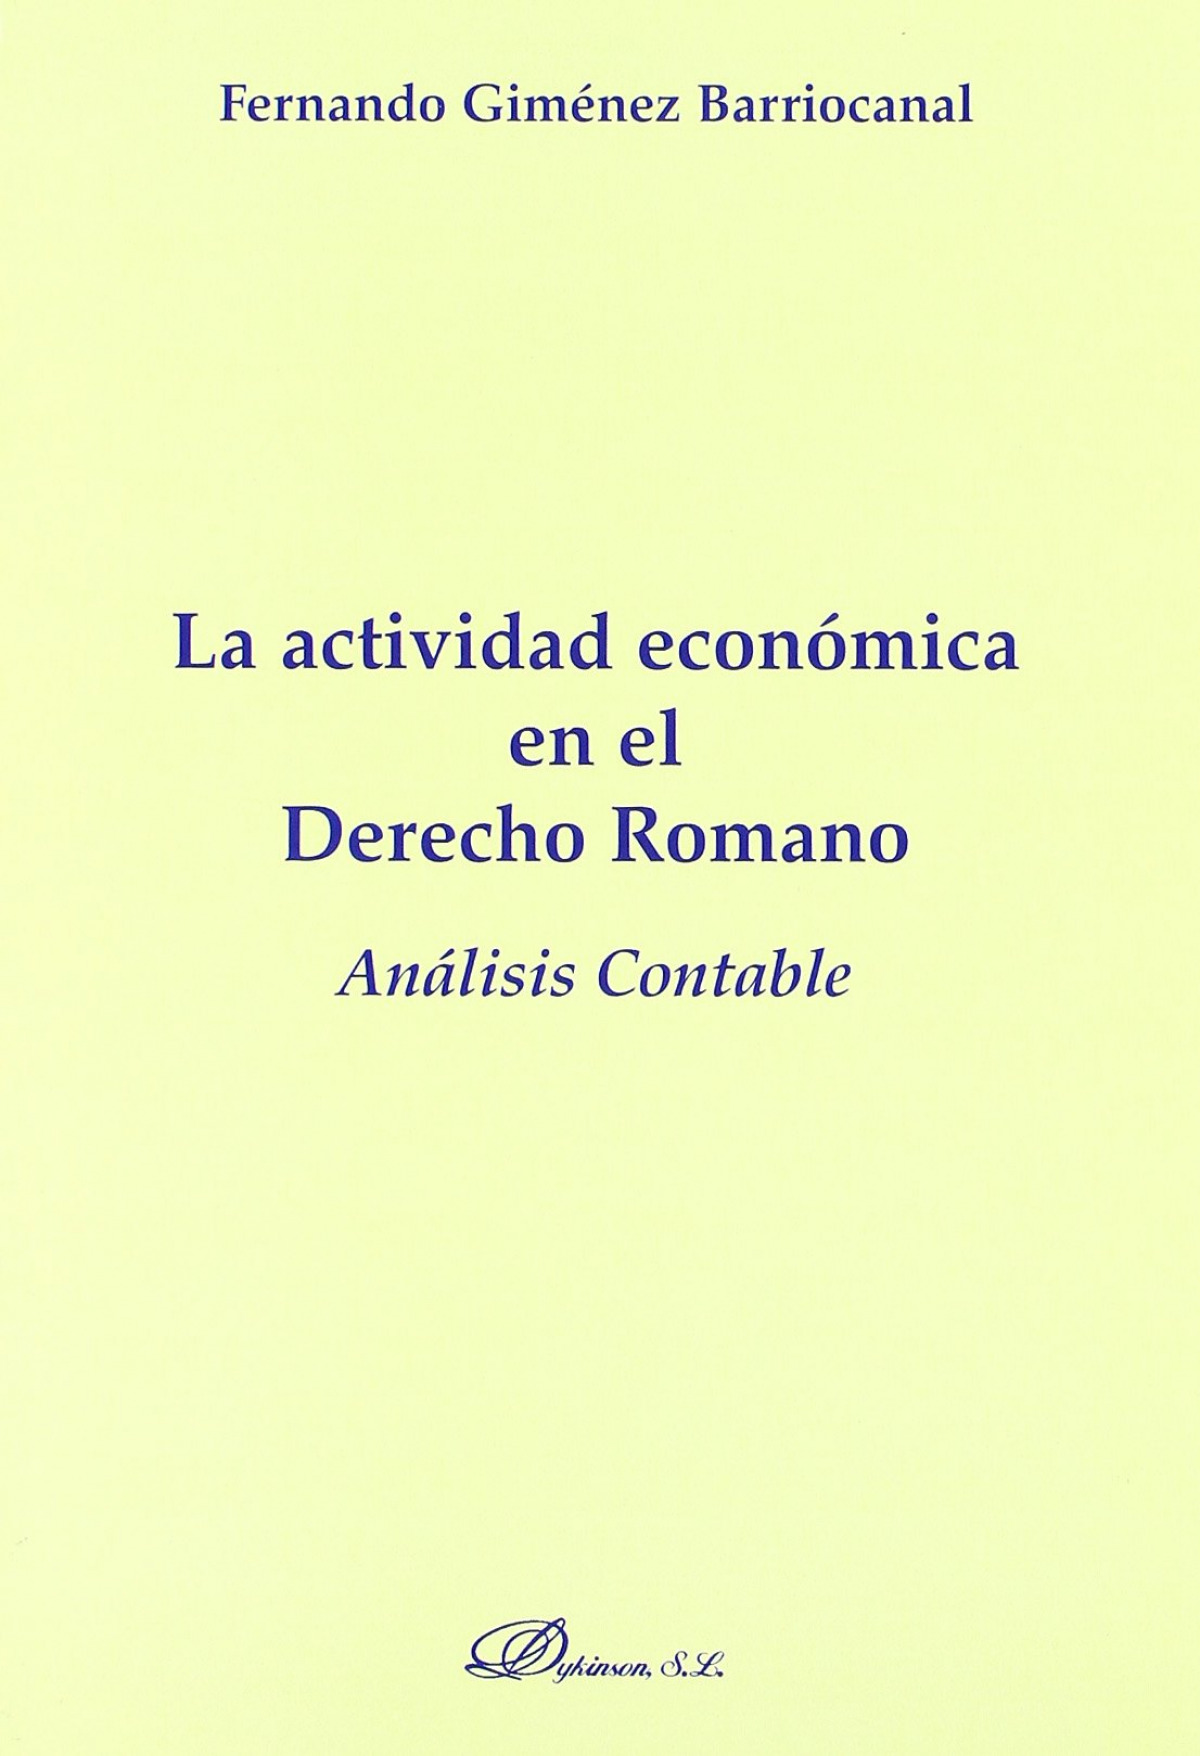 La actividad económica en el derecho romano - Giménez Barriocanal, Fernando